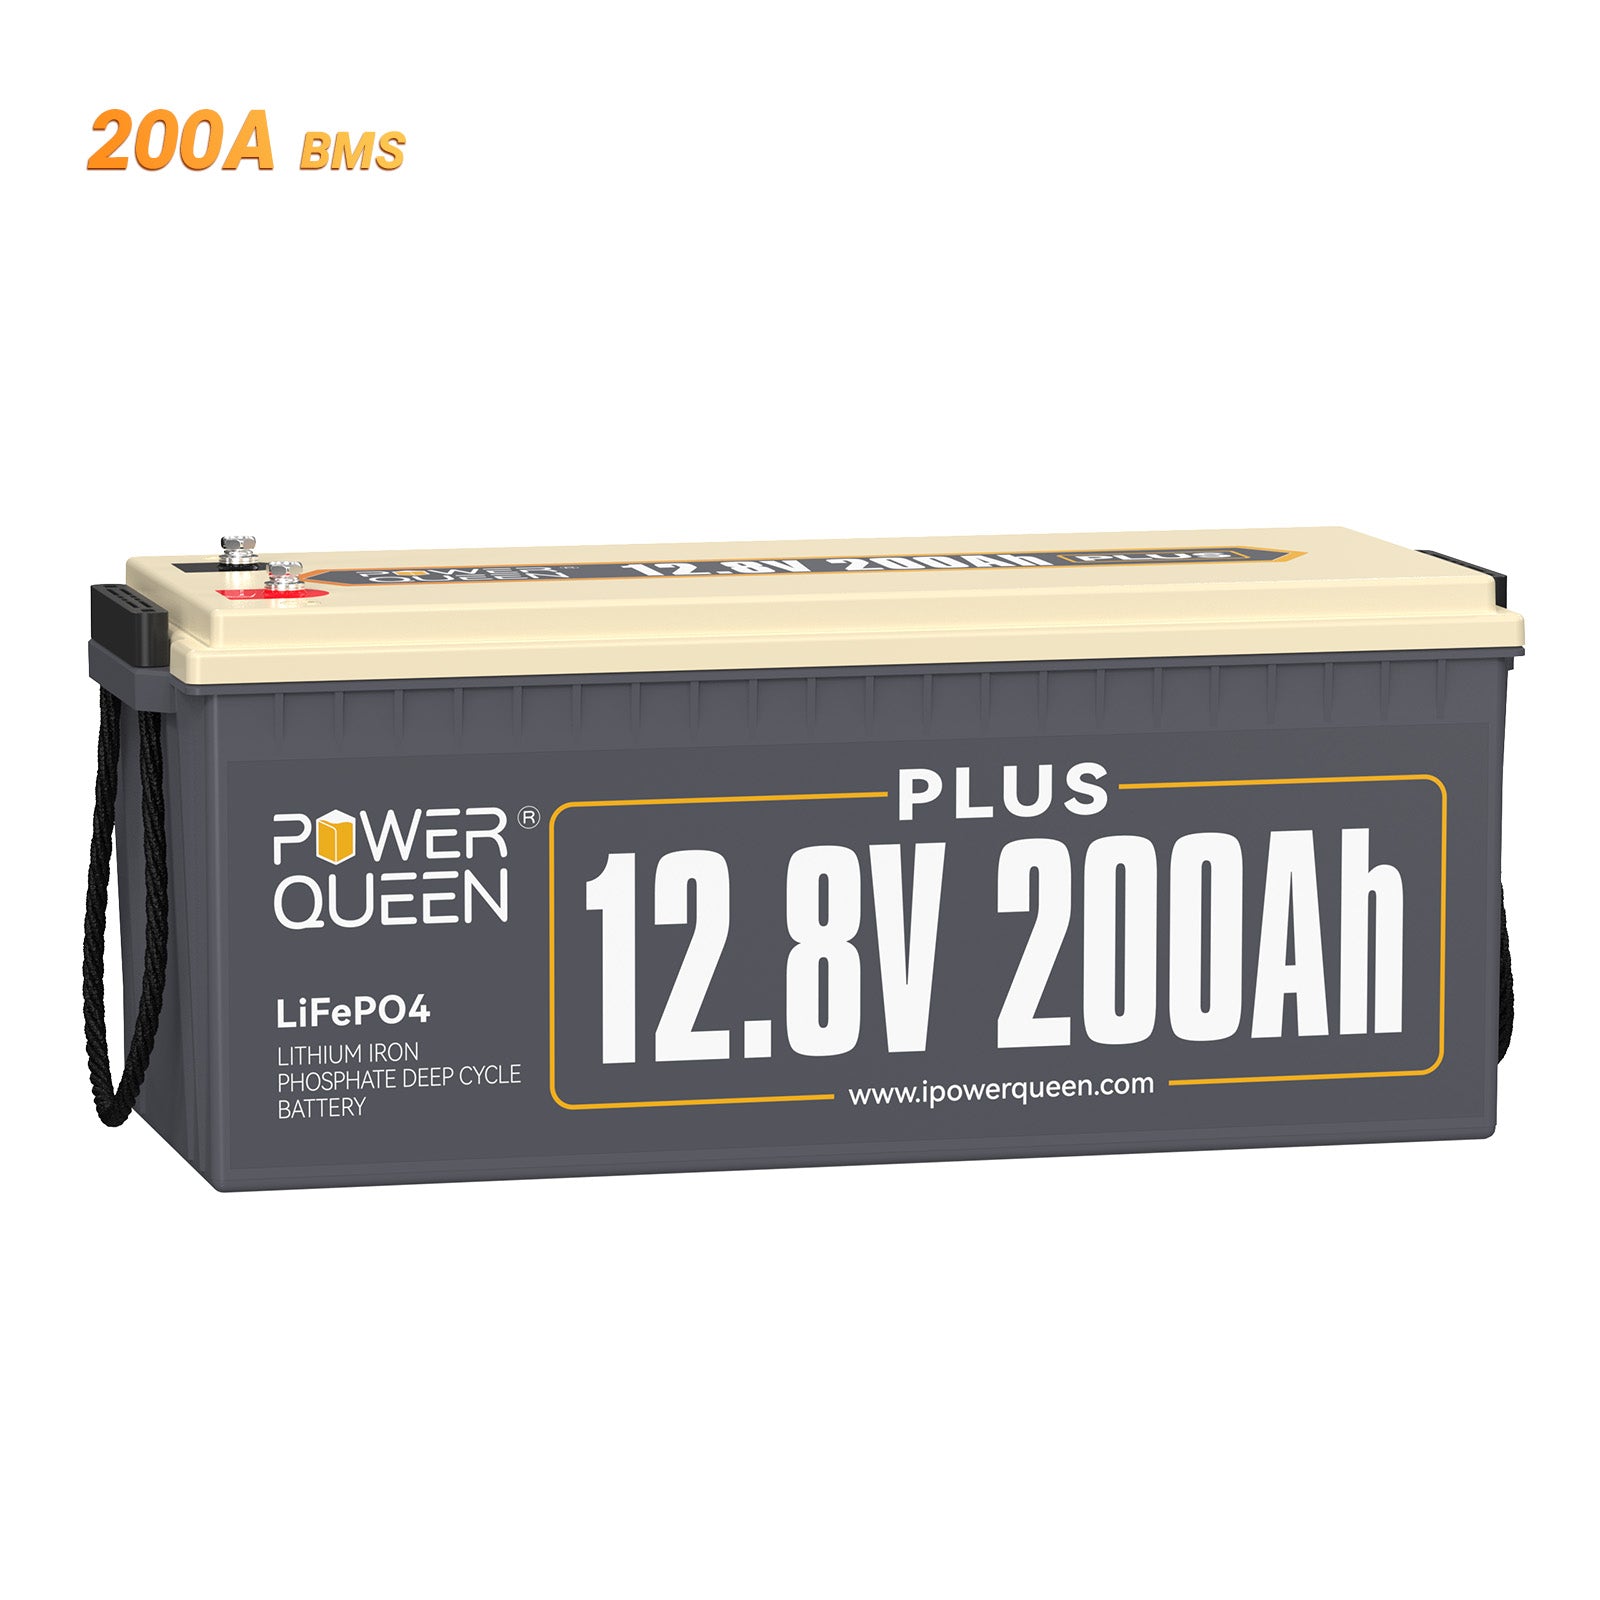 【0% BTW】Power Queen 12,8 V 200 Ah Plus LiFePO4-batterij, ingebouwd 200 A BMS